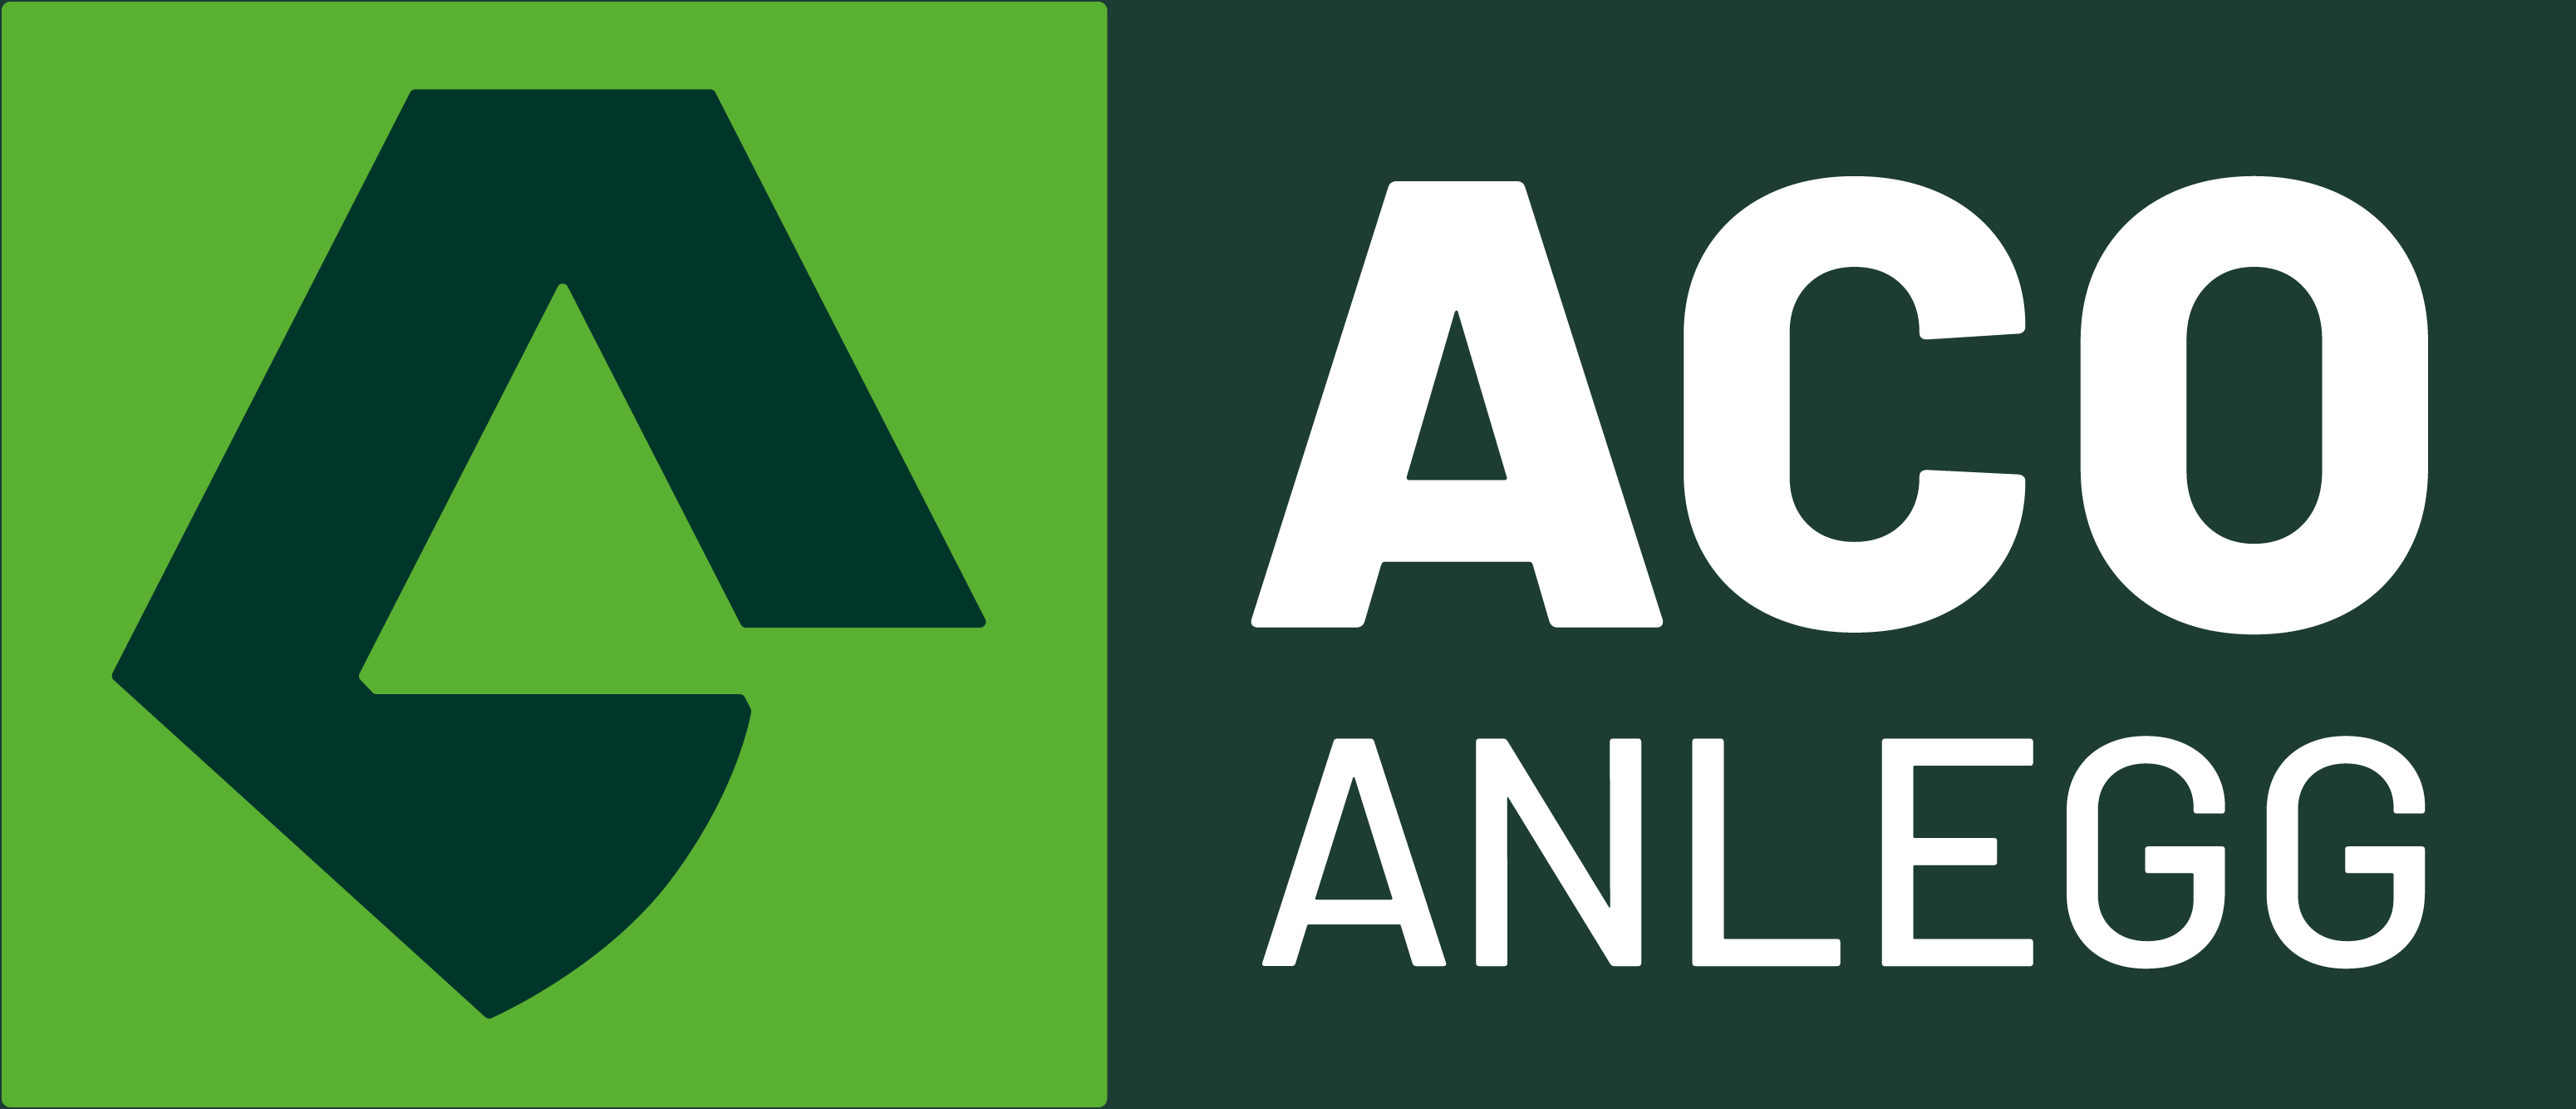 Aco Anlegg sin logo